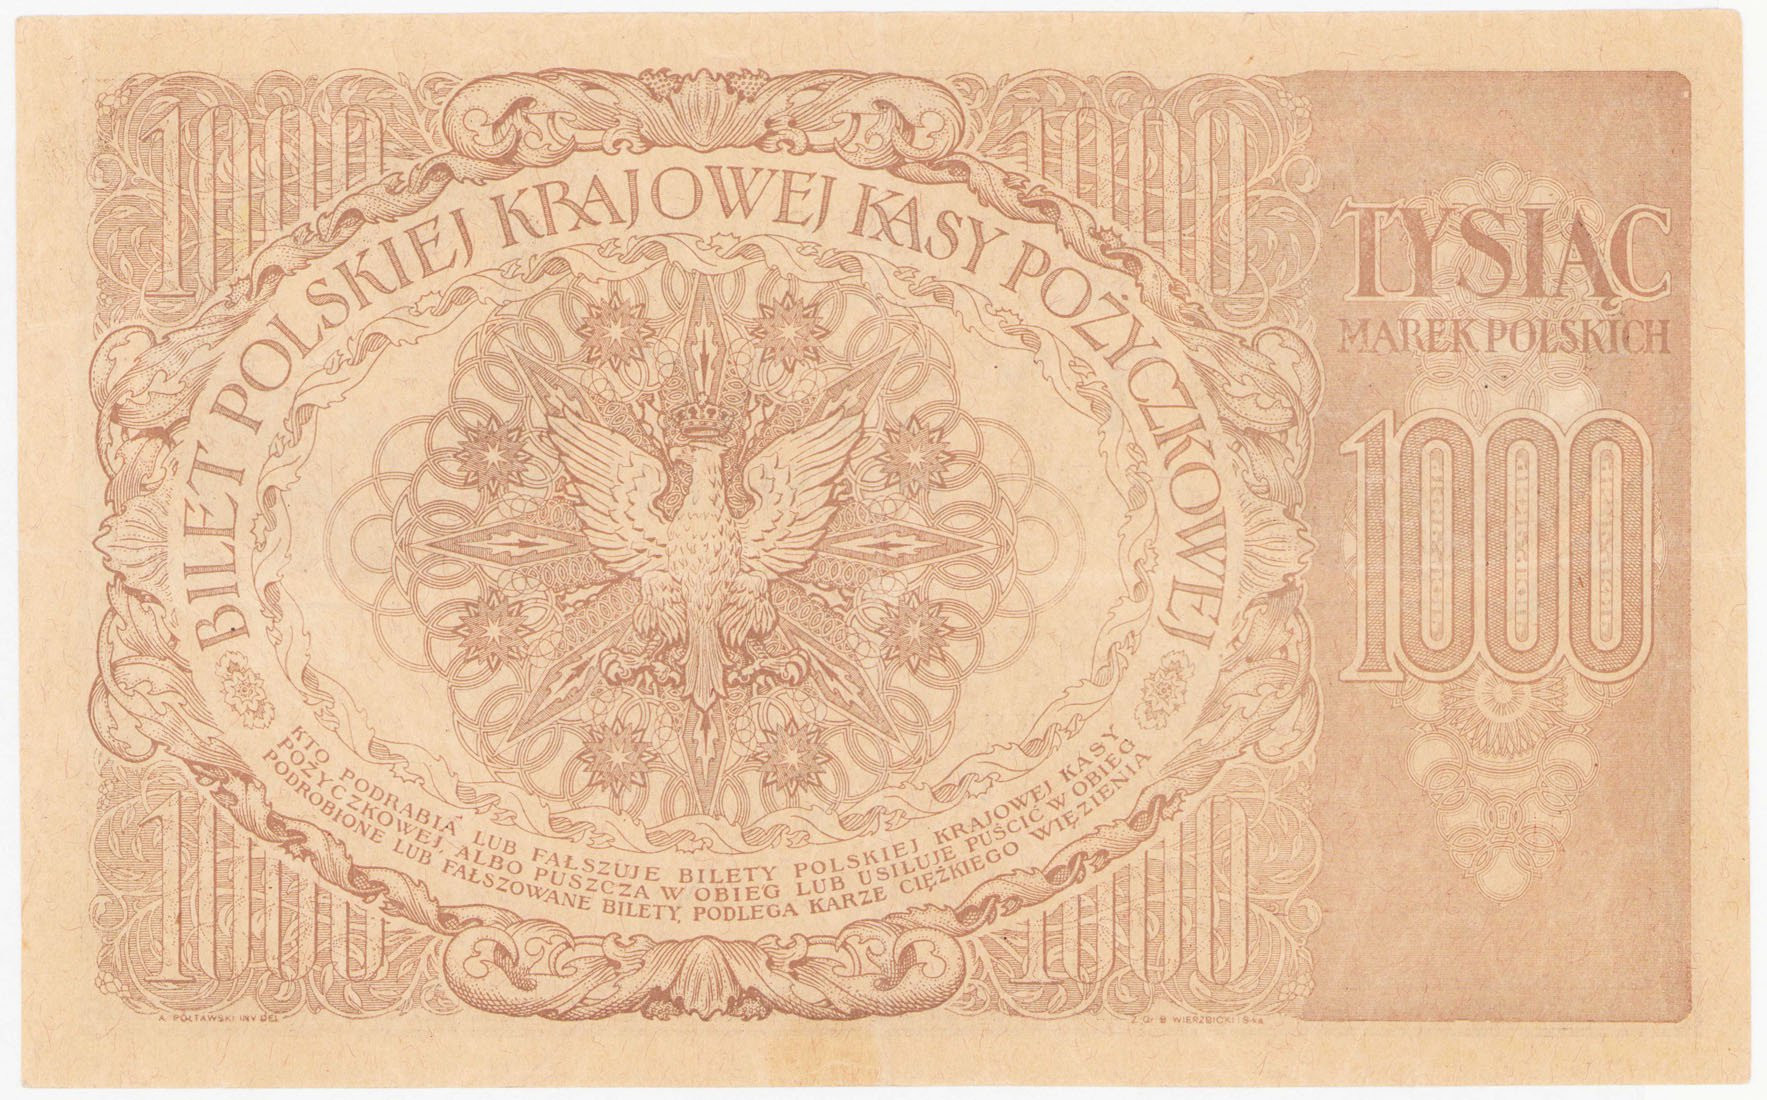 1.000 marek polskich 1919 – RZADKOŚĆ R6